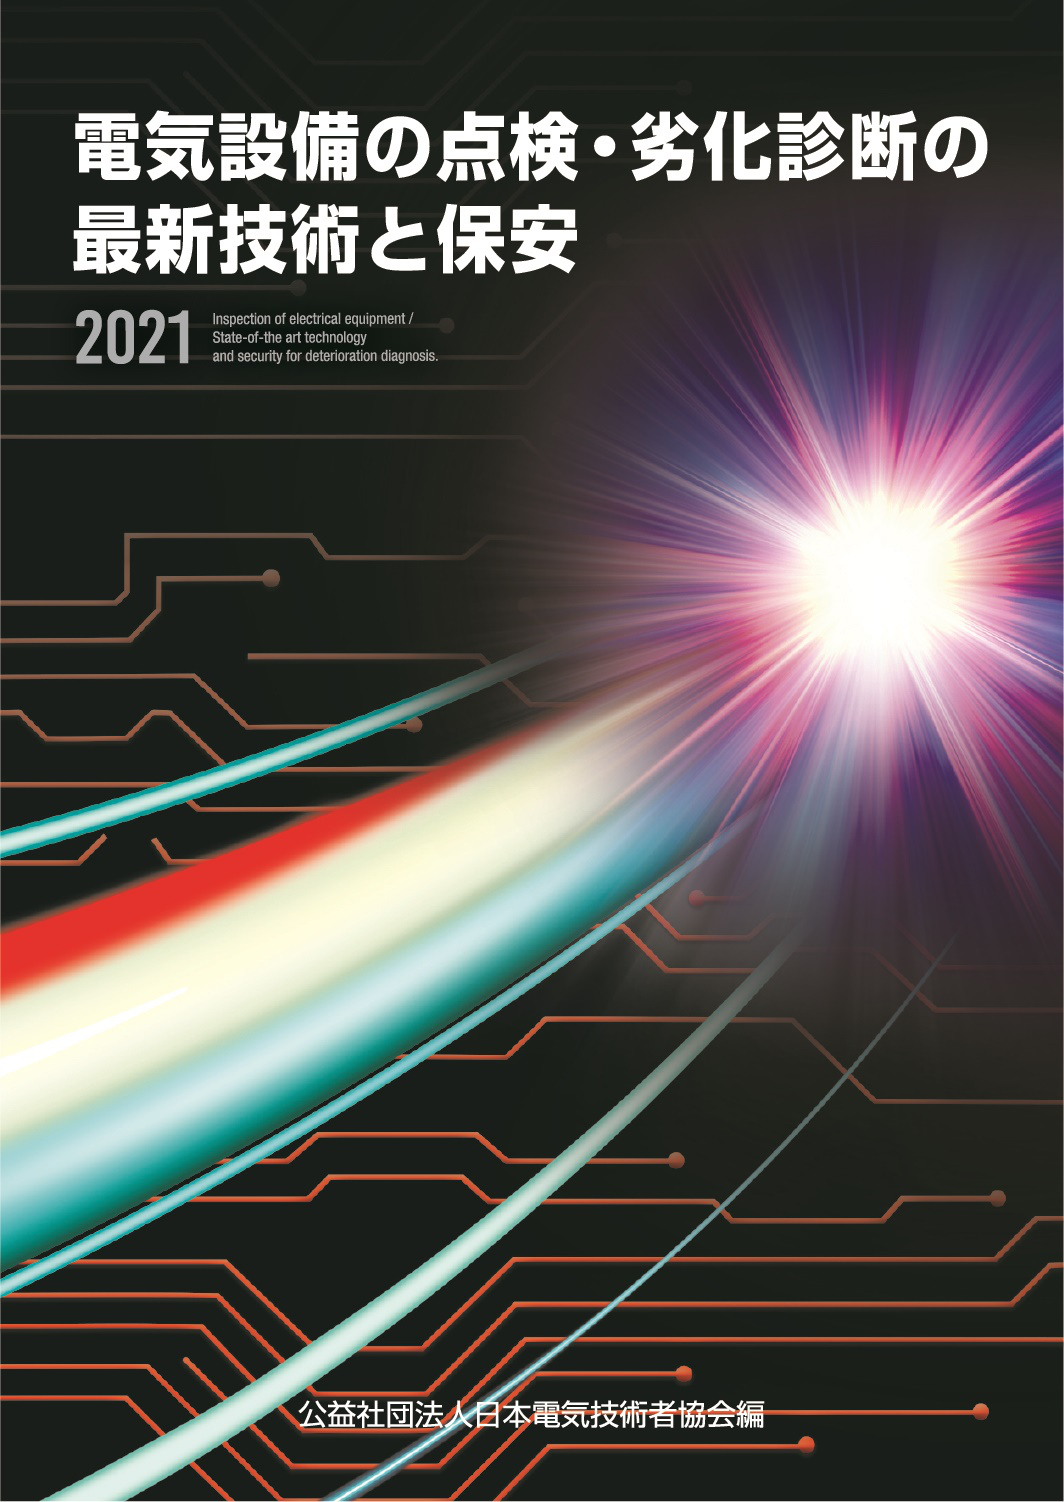 発刊図書案内 | 図書発行 | 活動内容 | 公益社団法人 日本電気技術者協会